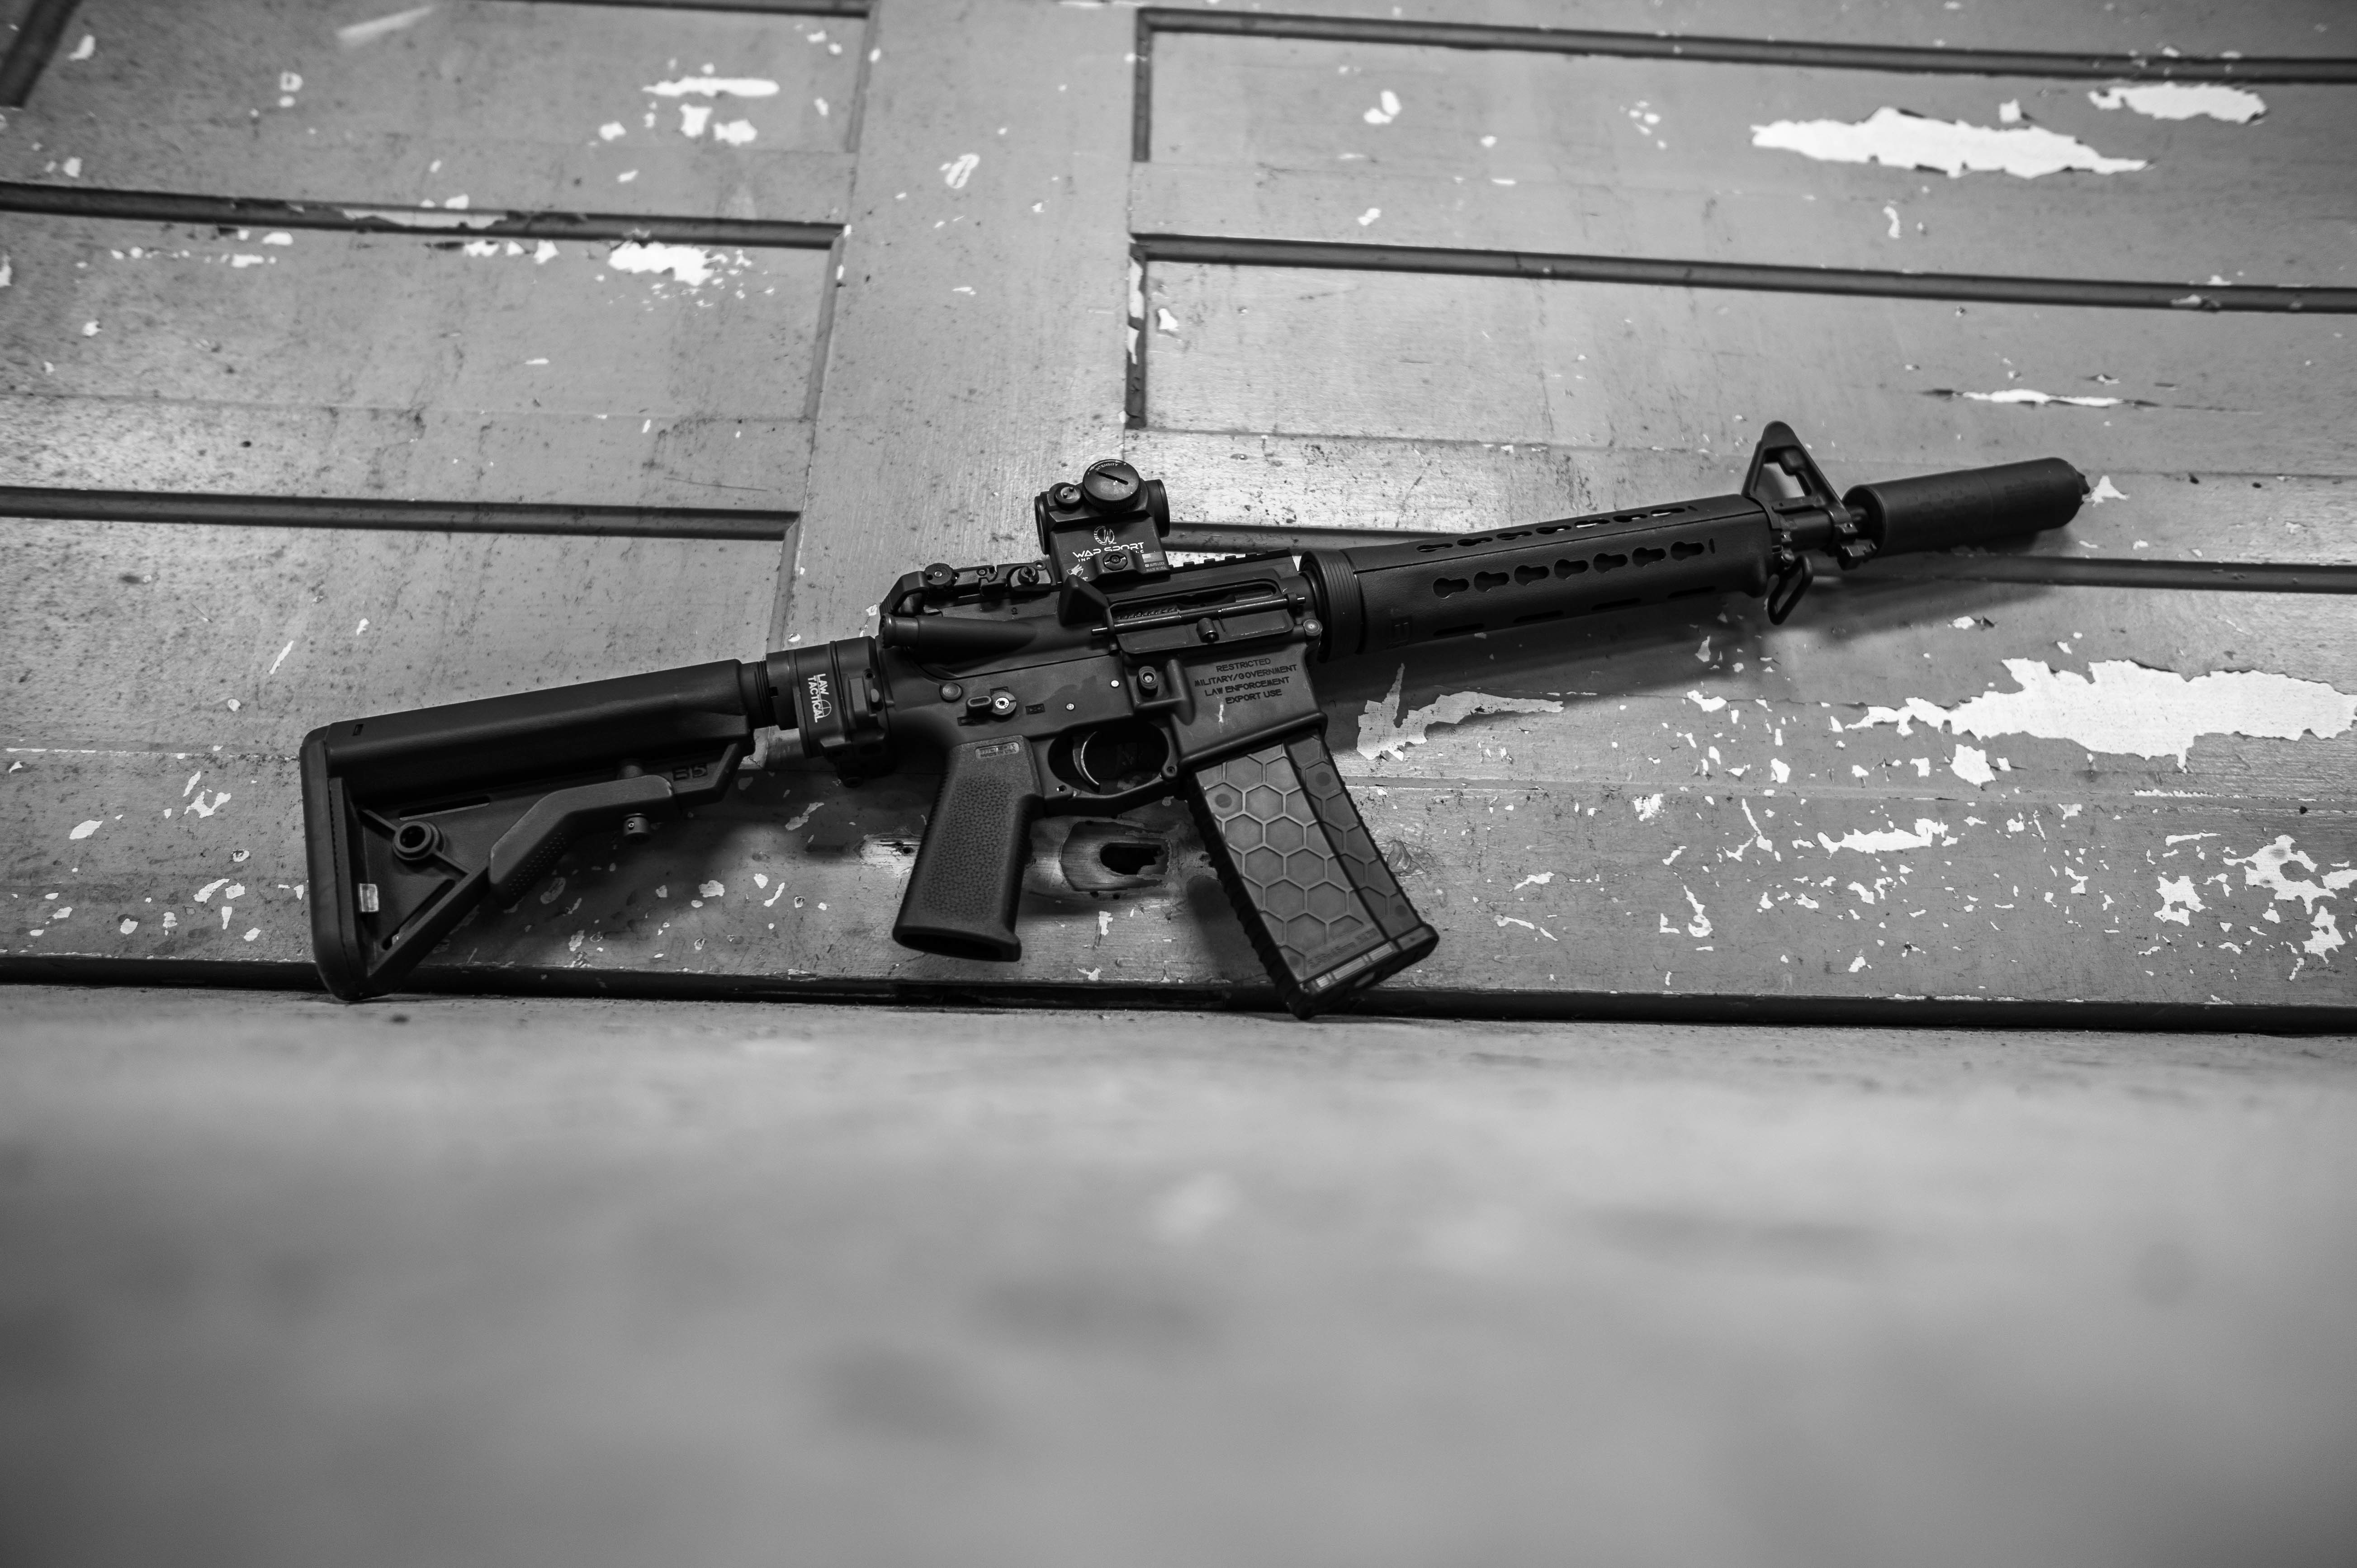 Скачать обои бесплатно Оружие, Пистолет, Штурмовая Винтовка картинка на рабочий стол ПК